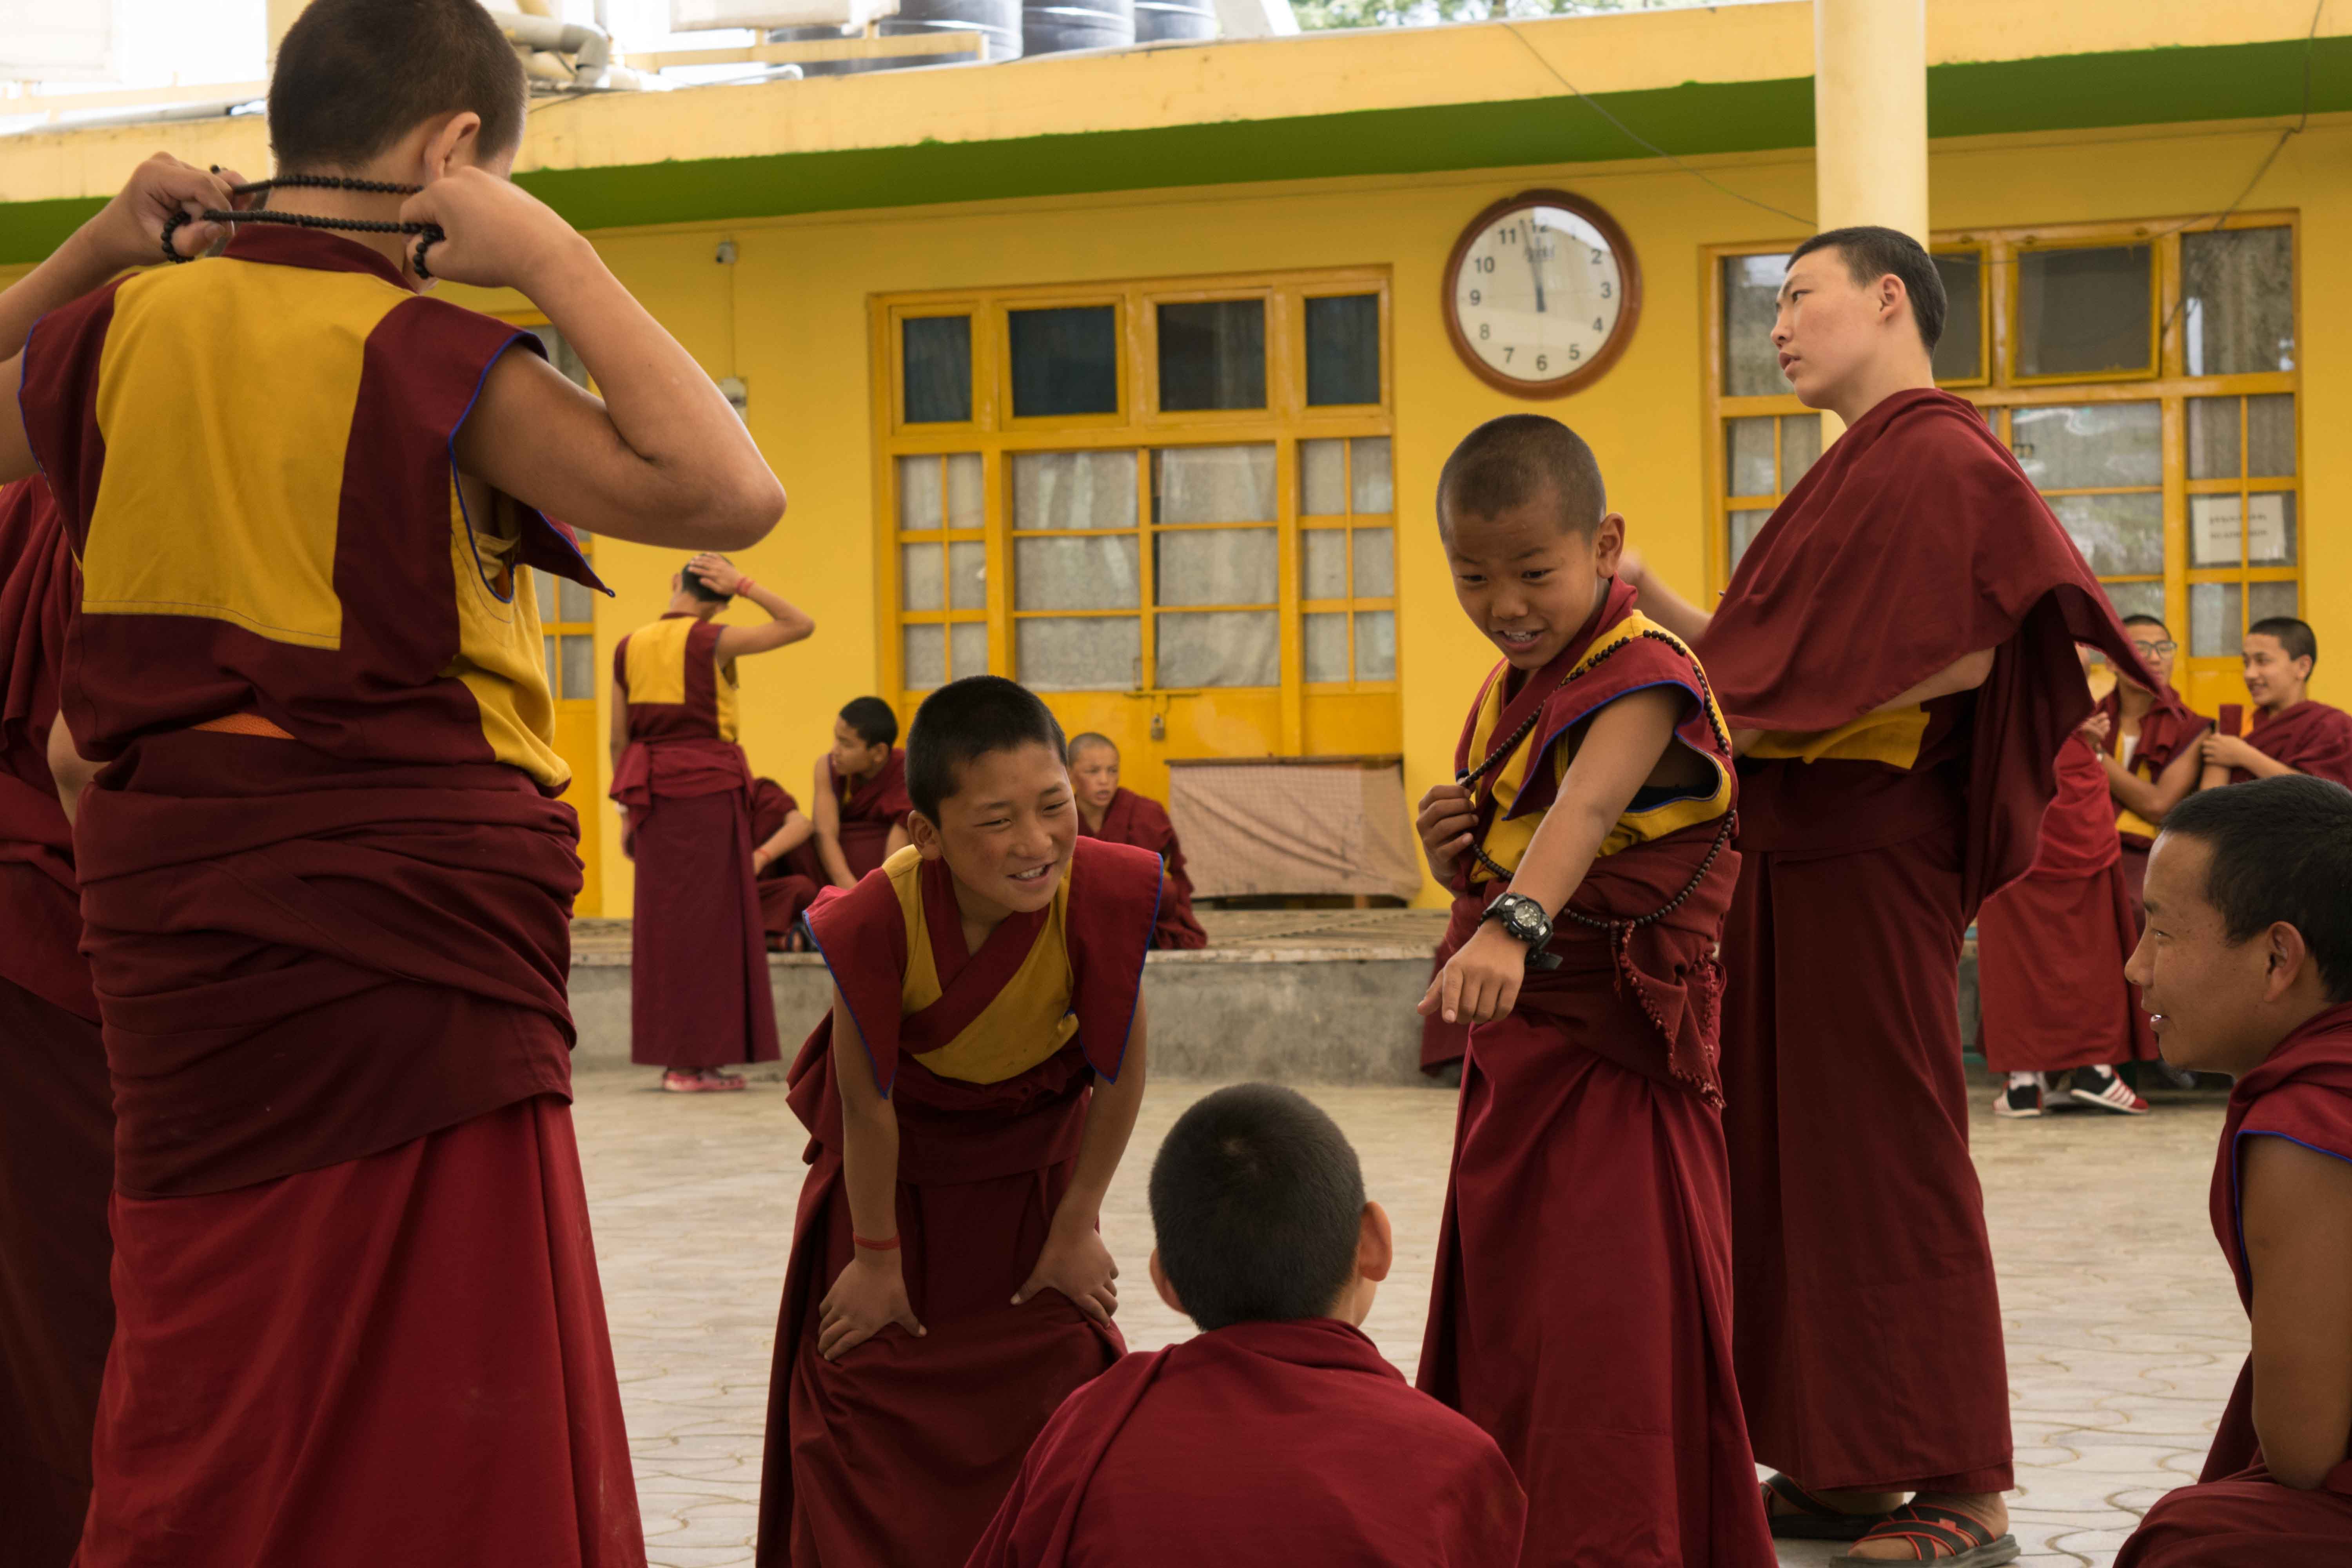 Debates sobre budismo num dos lugares sagrados de Mcleod Ganj. Nessa foto, só os jovens monges.